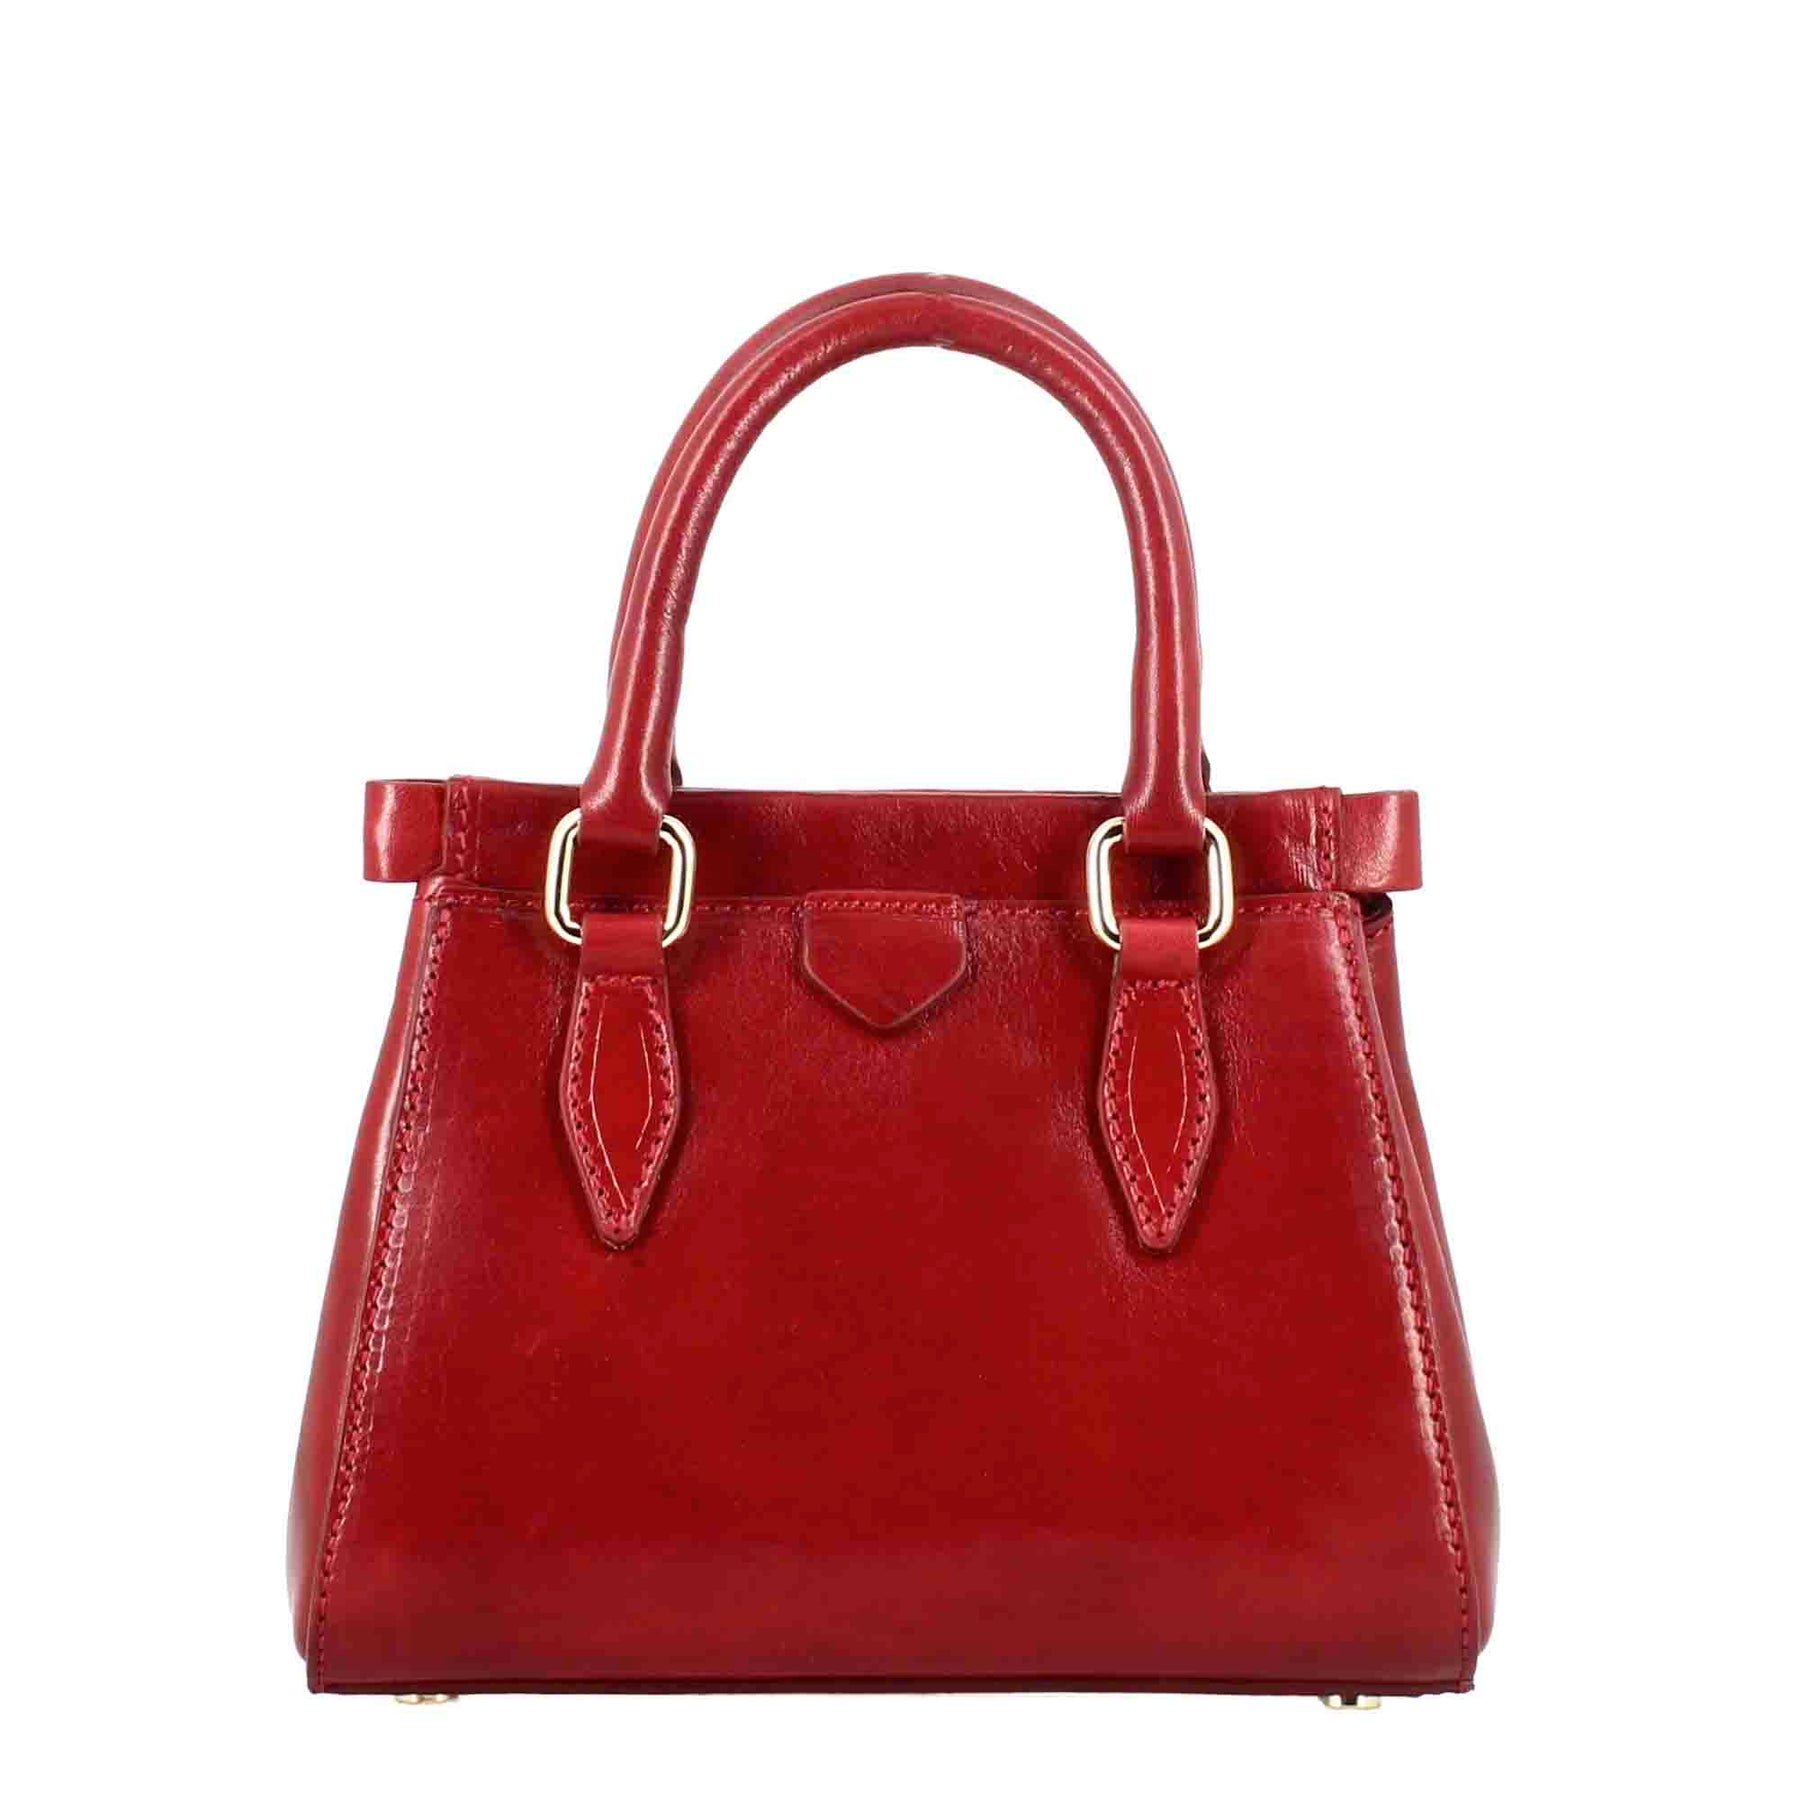 Fiorenza Lederhandtasche mit abnehmbarem roten Schulterriemen